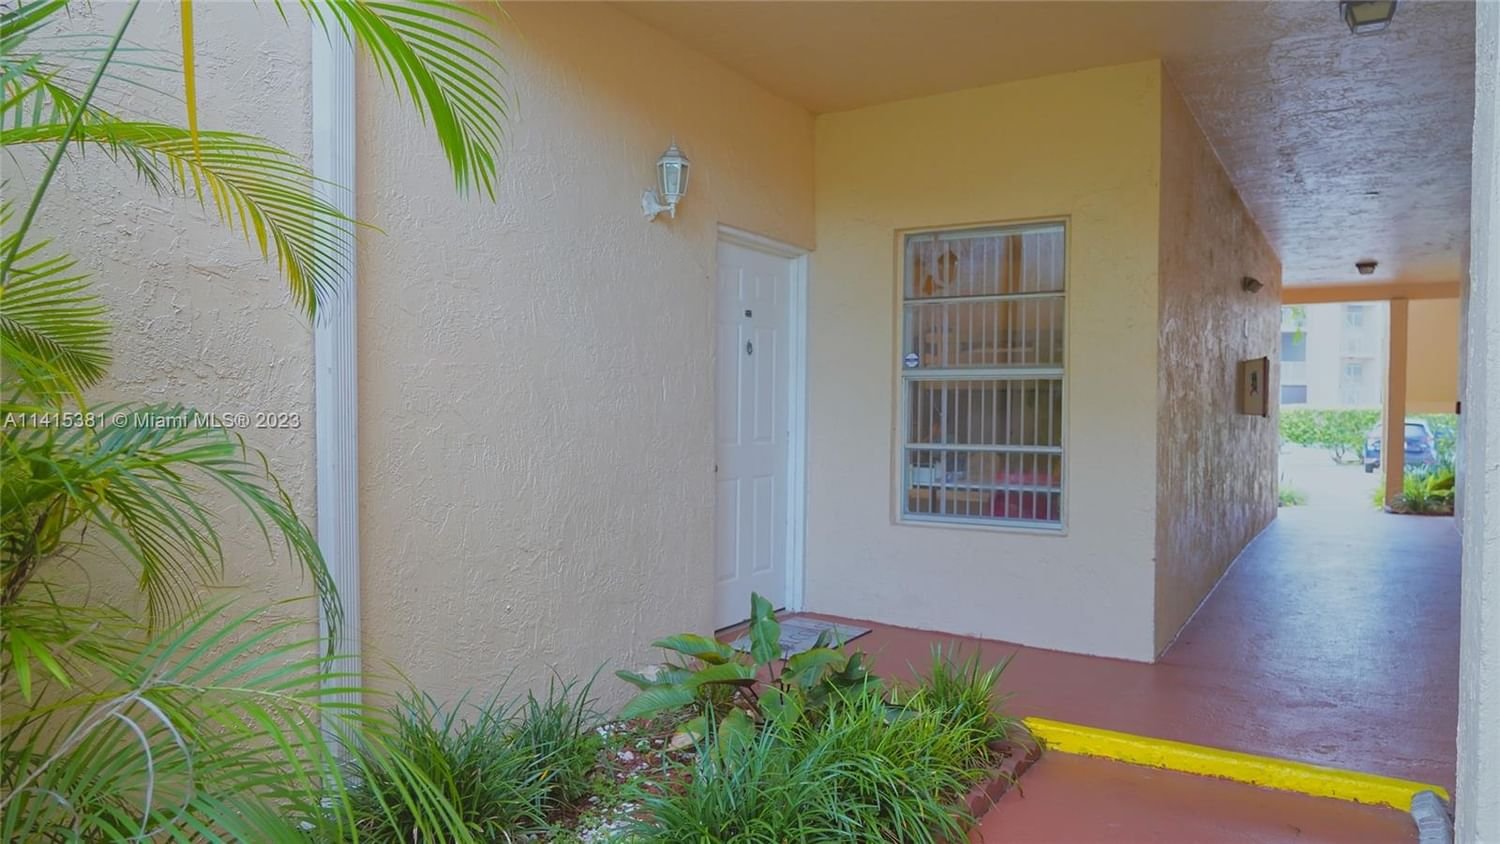 Real estate property located at 15285 107th Ln #213, Miami-Dade County, HAMMOCKS TRAILS CONDO, Miami, FL